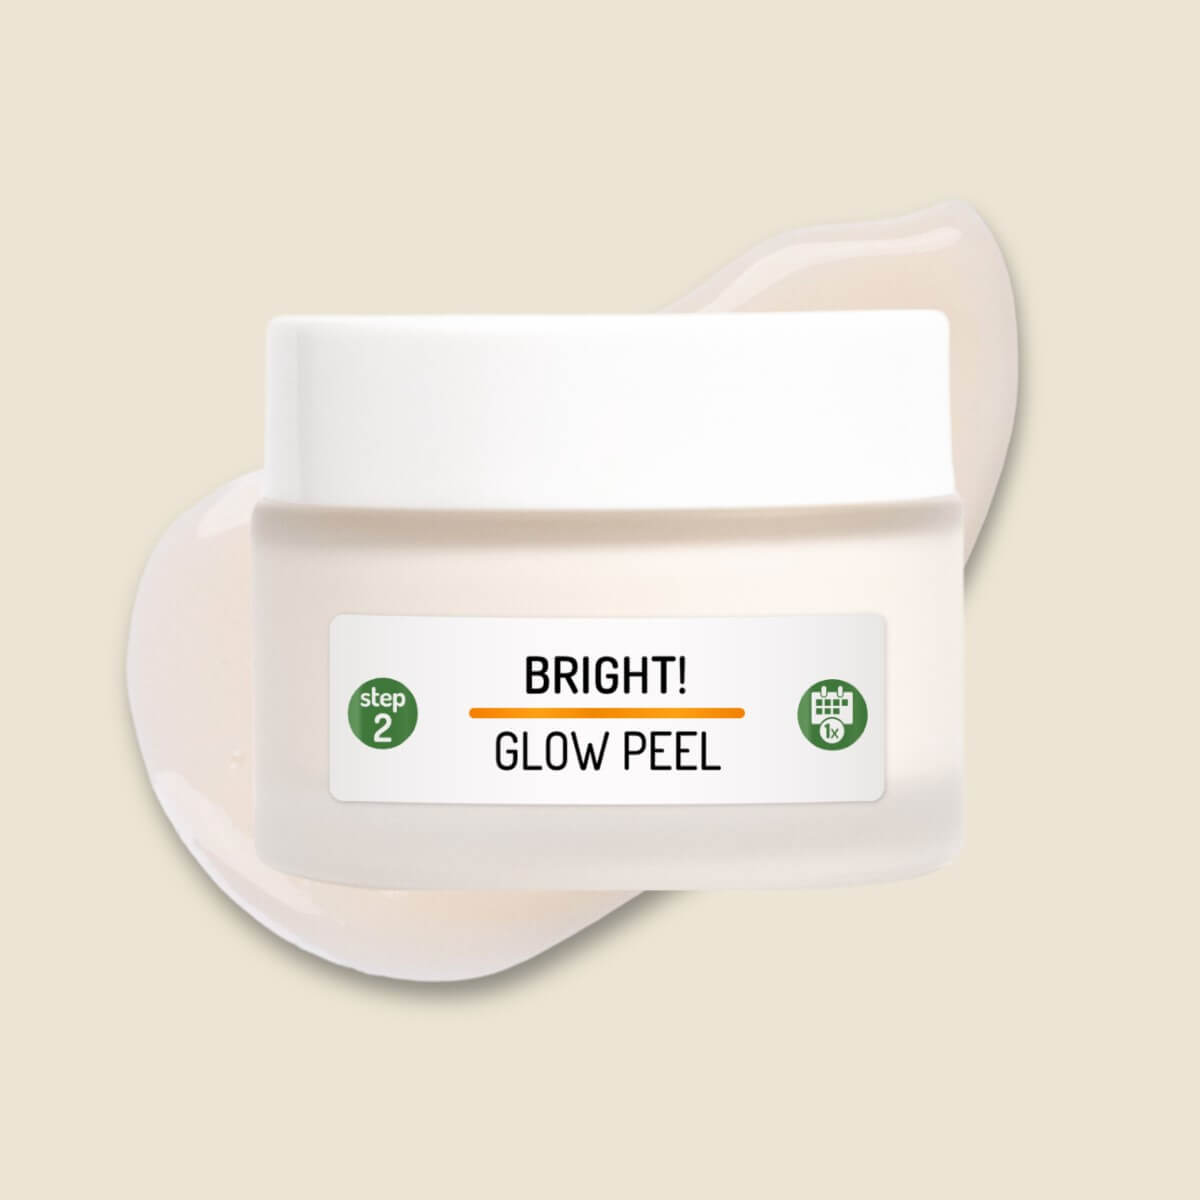 Tiegel der Bright! Glow Peel Gesichtsmaske mit Fruchtsäuren, mit Textur im Hintergrund